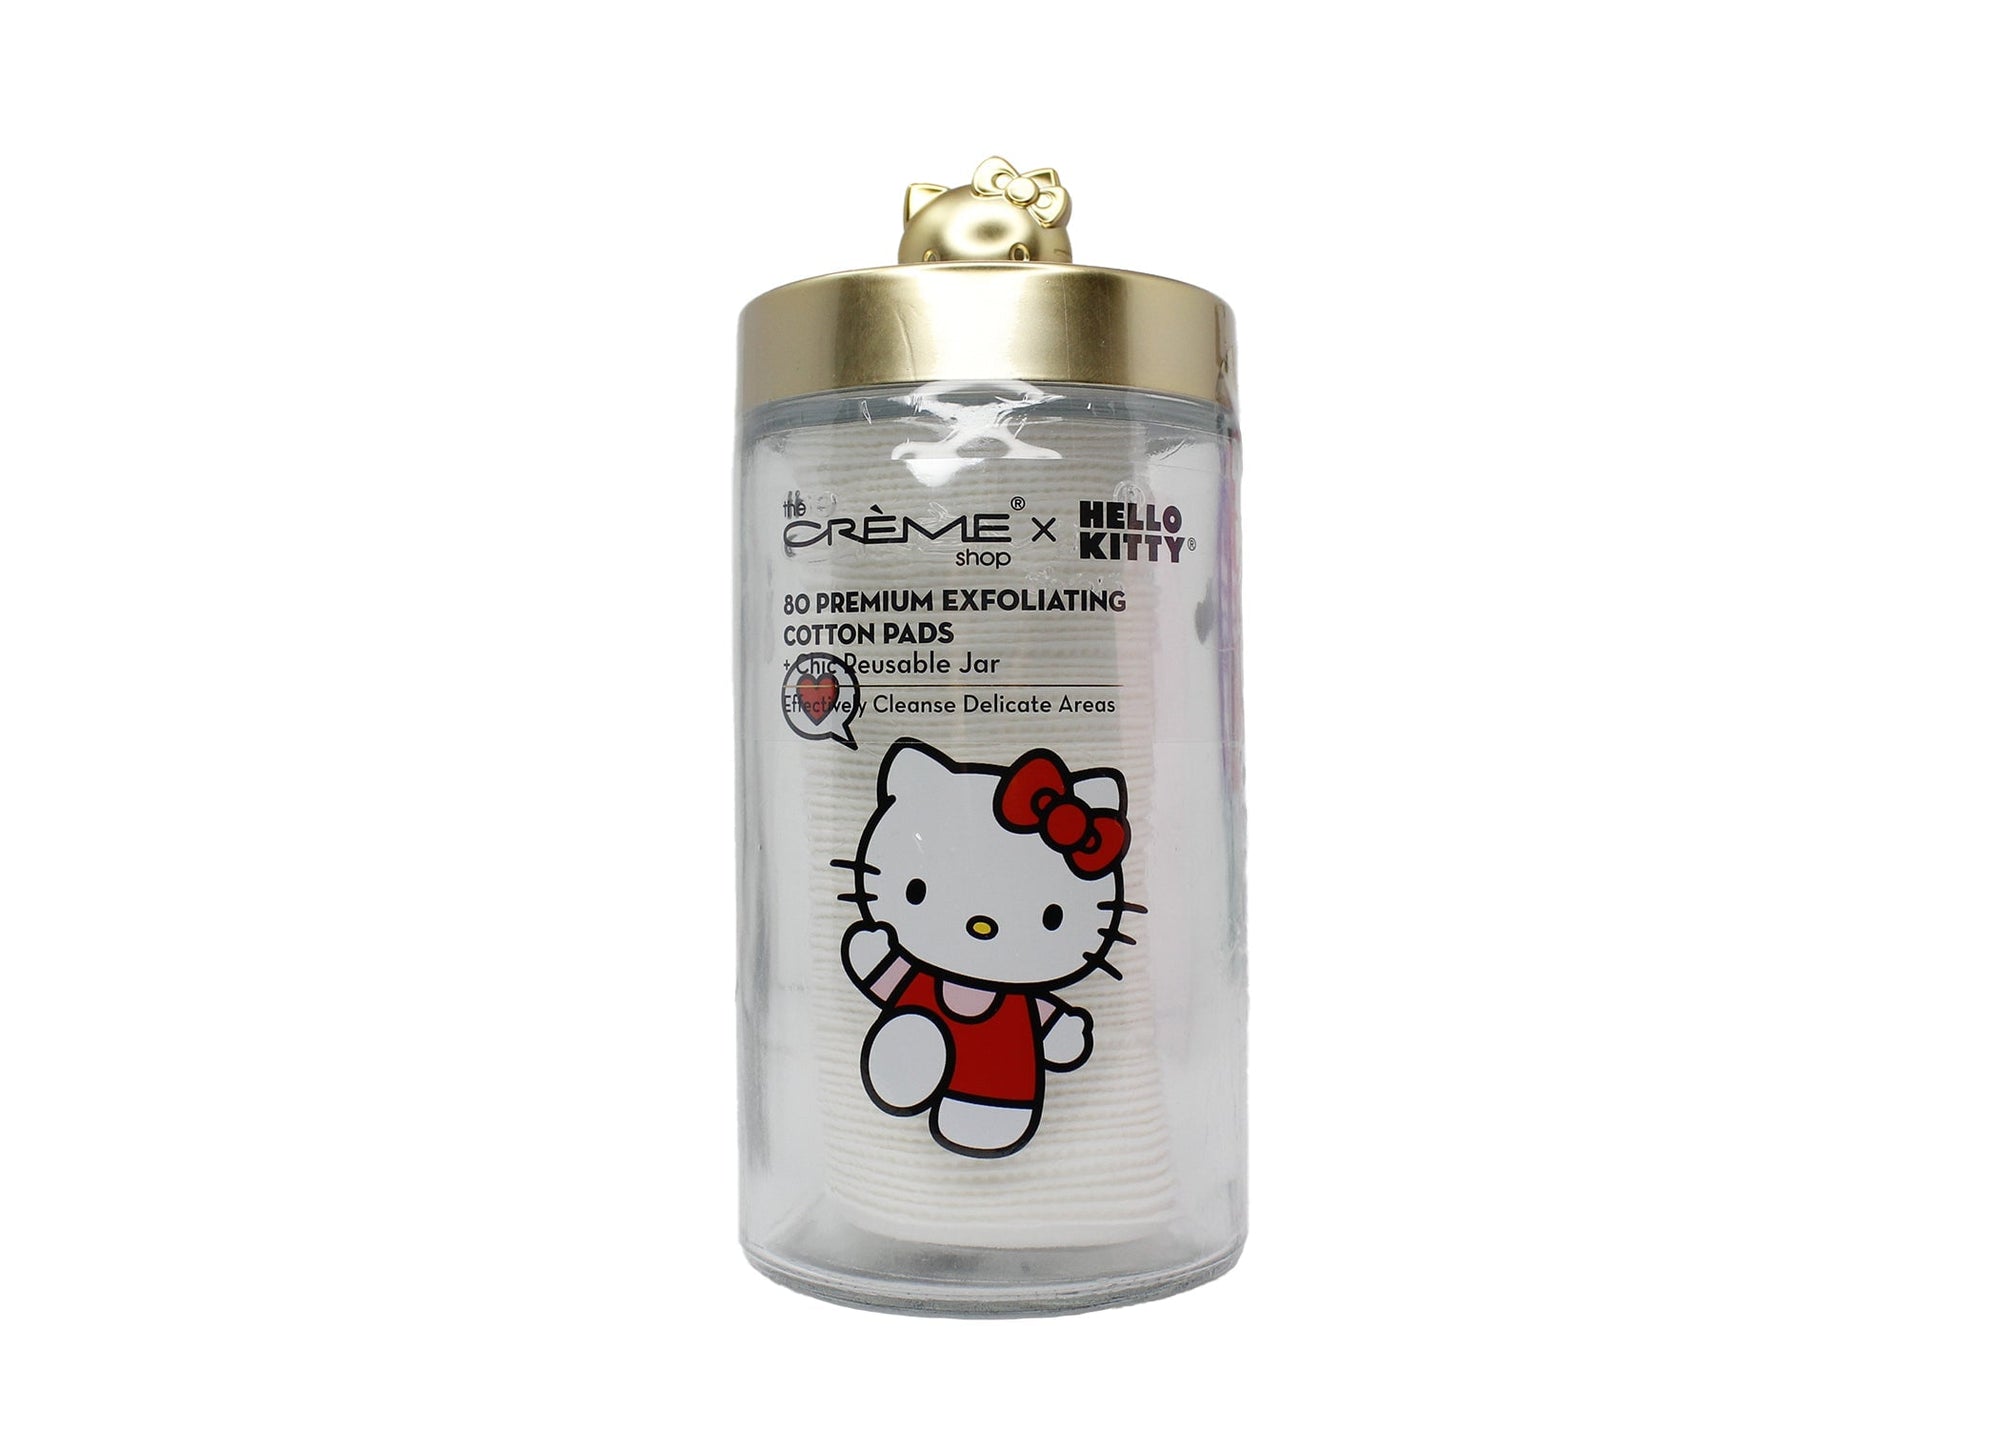 Hello Kitty Chic Large Reusable Jar + Premium Cotton Pads – Matte Gold Cotton Pads The Crème Shop x Sanrio 